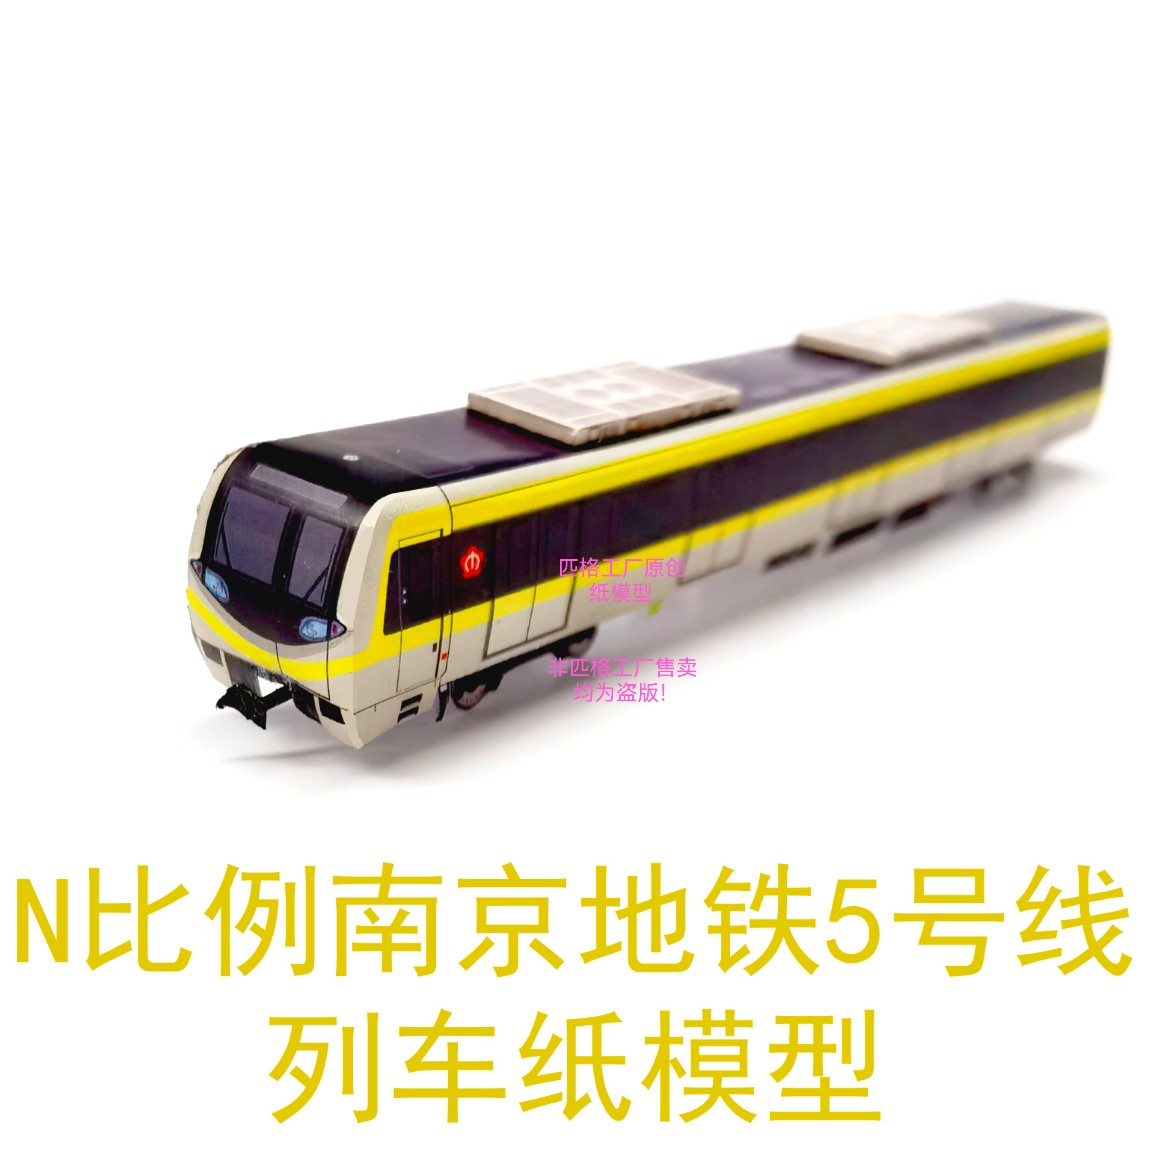 匹格N比例南京地铁5号线列车模型3D纸模手工DIY火车高铁地铁模型